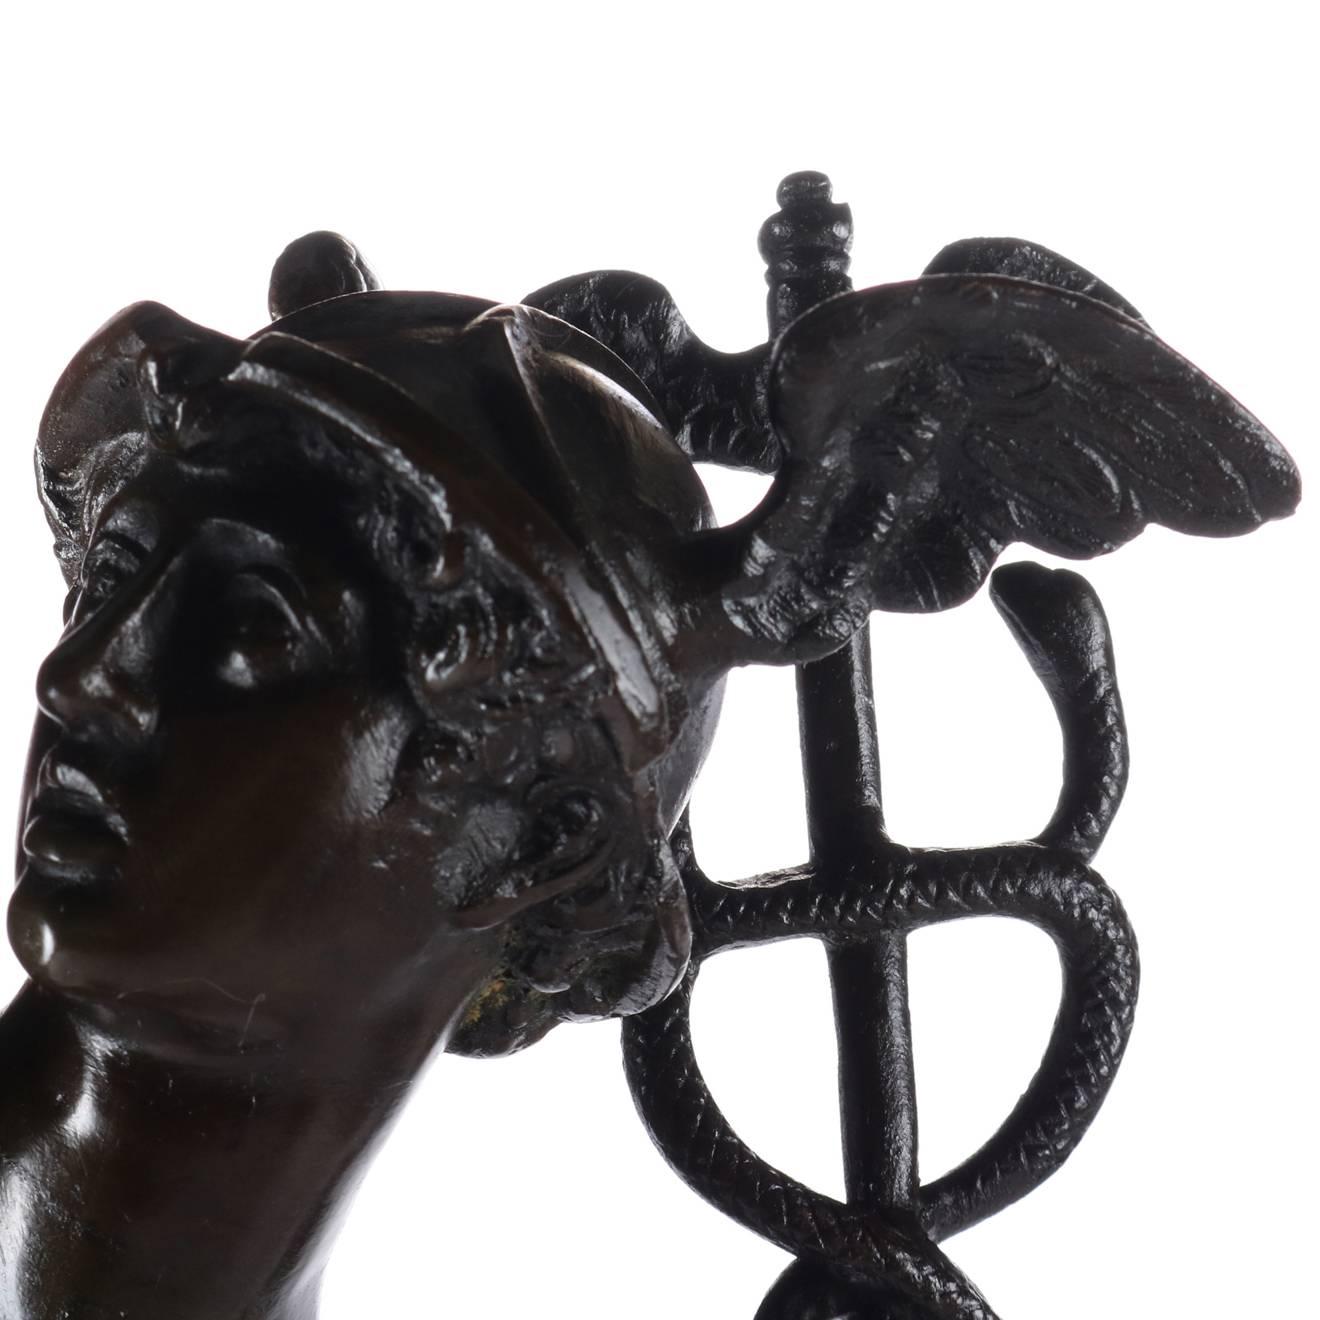 Classical Roman Antique Classical Bronzed Statue of Roman God Mercury, 19th Century